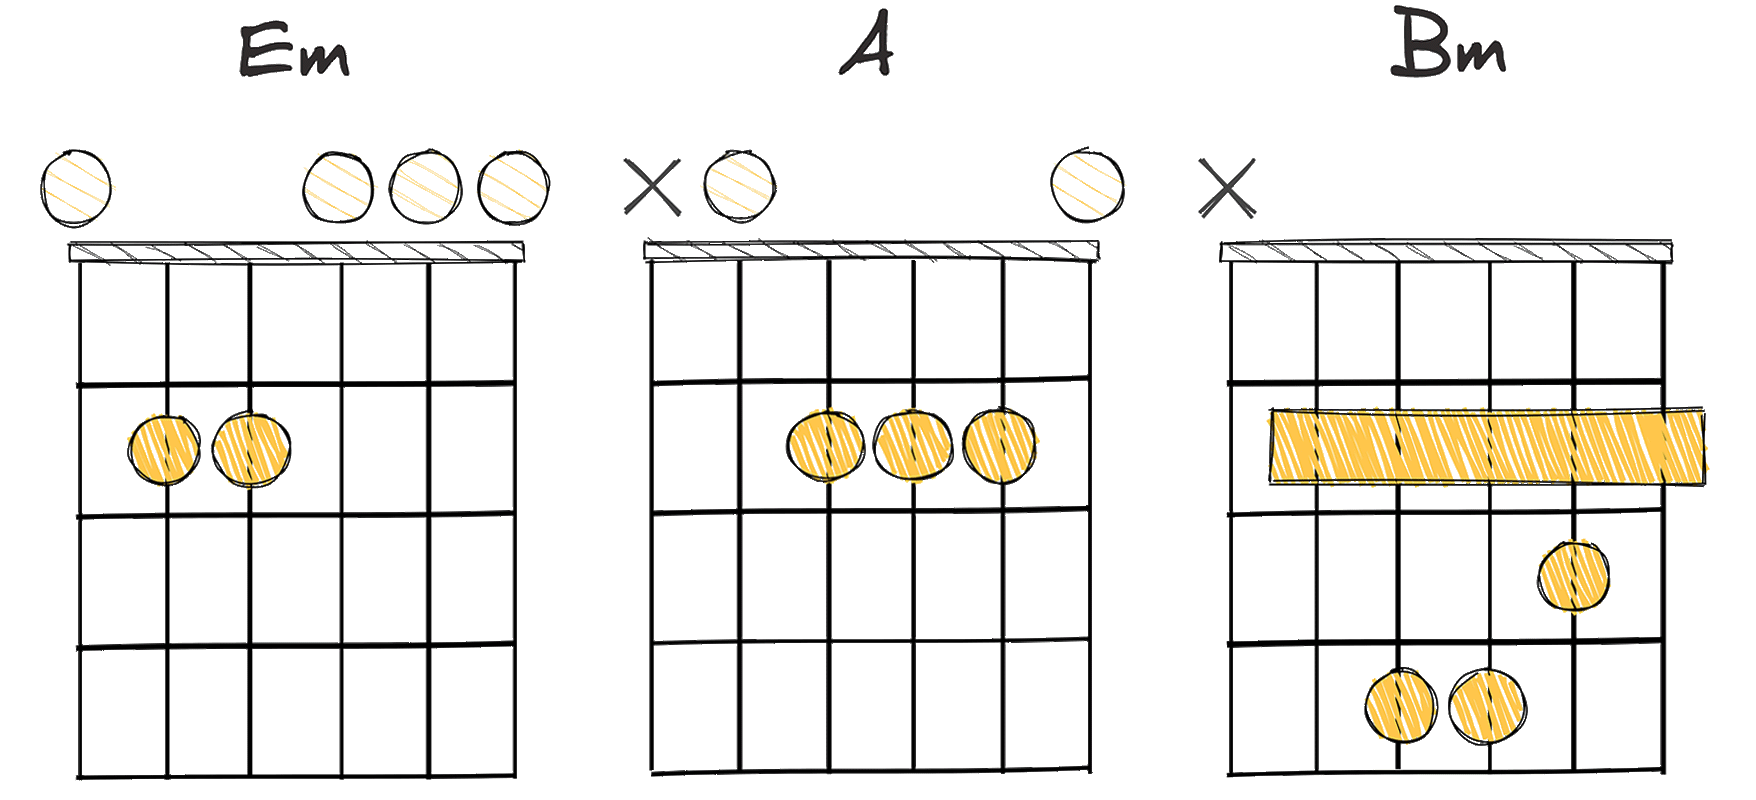 ii-V-vi (2-5-6) chords diagram